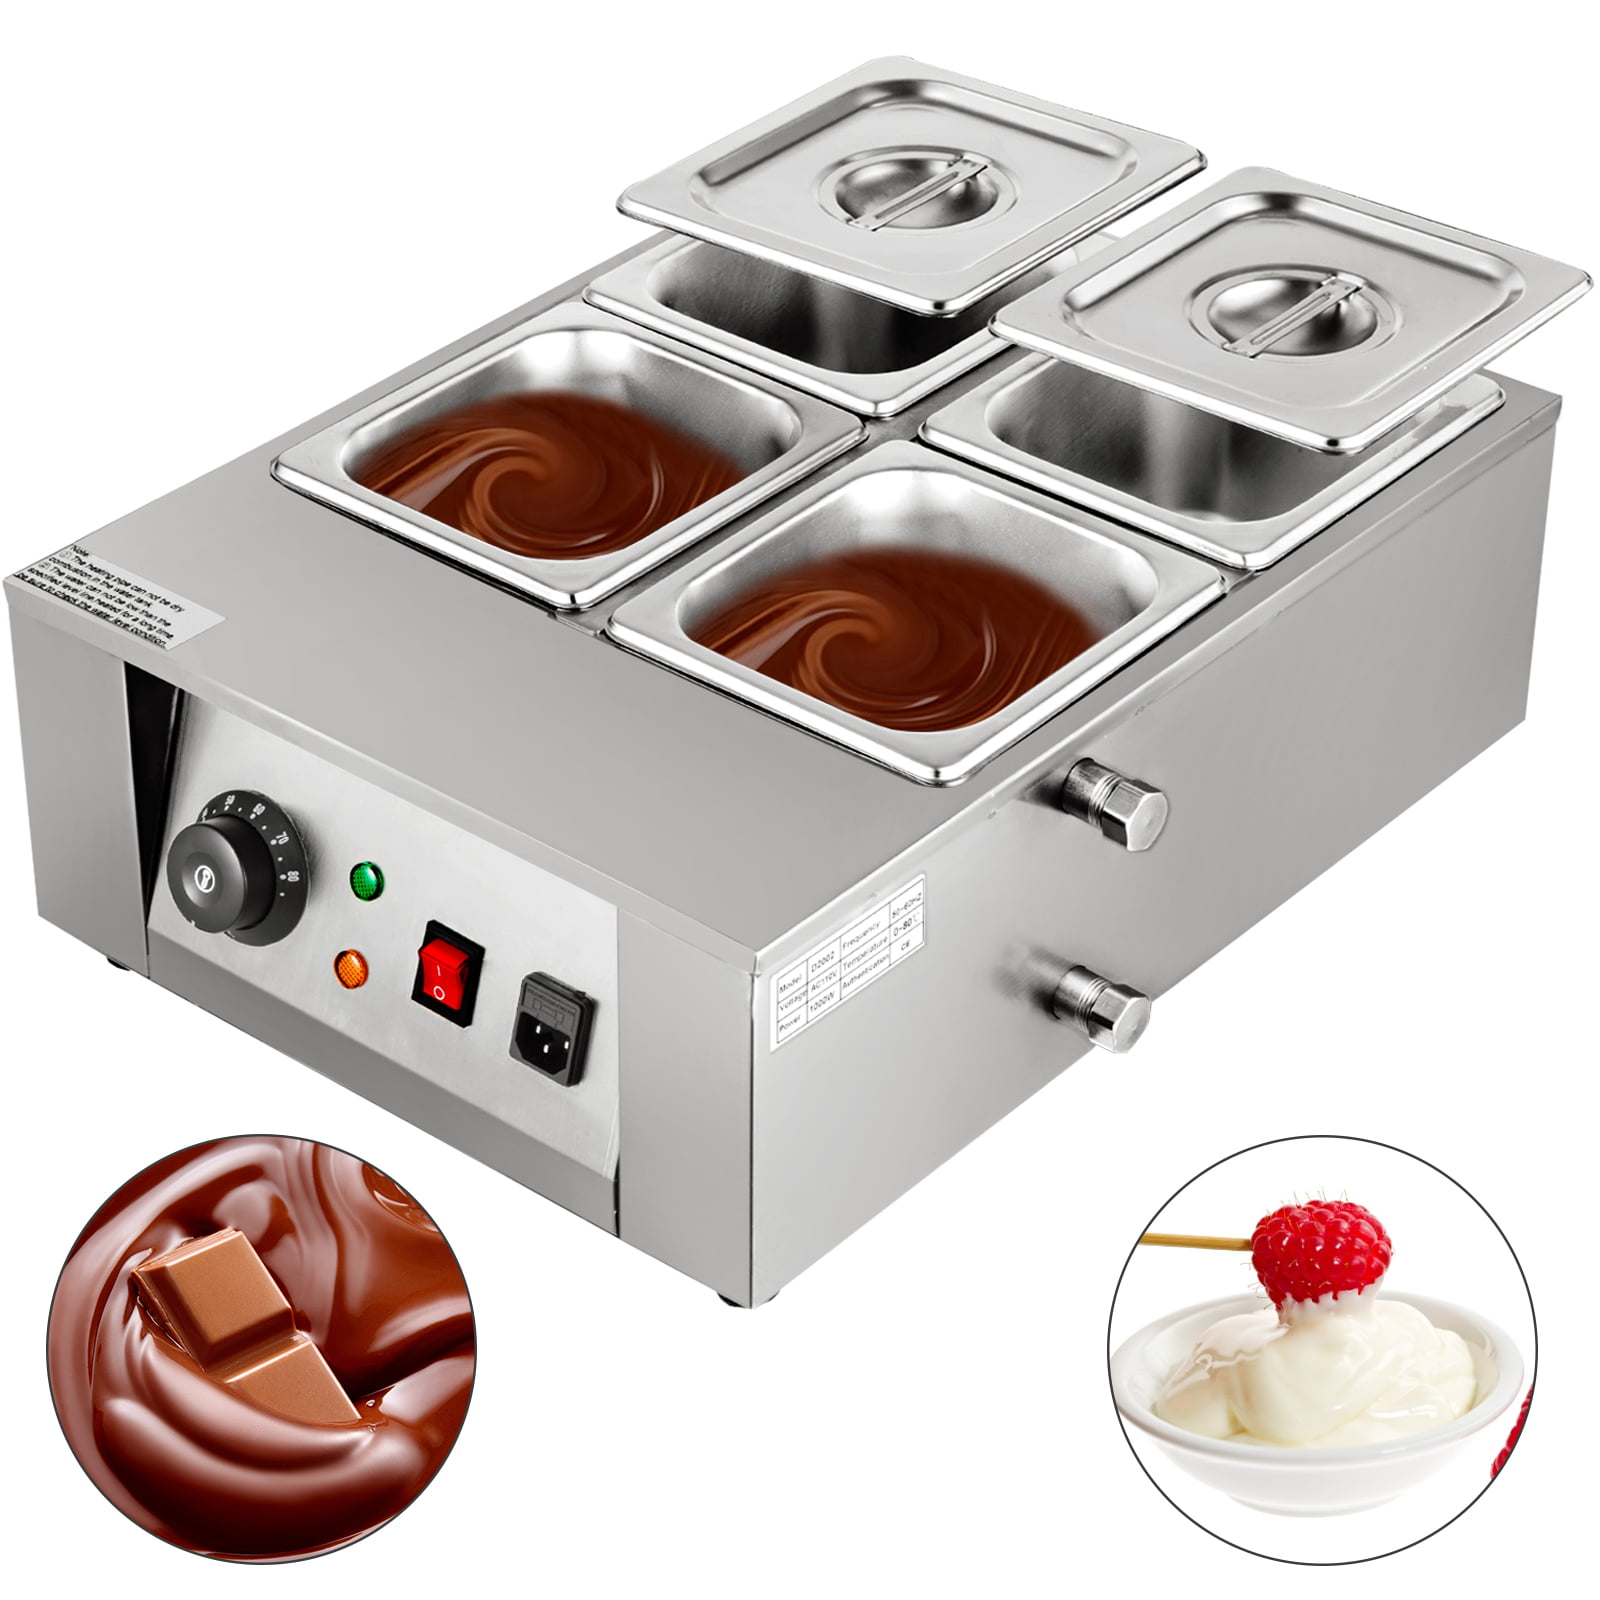 500W 2 Tanks Commercial Electric Chocolate Melting Pot Machine 110V/230V 12KG Digital Control Professional Chocolate Tempering Machine Chocolate Melting Pot 0-185℉ Adjustable